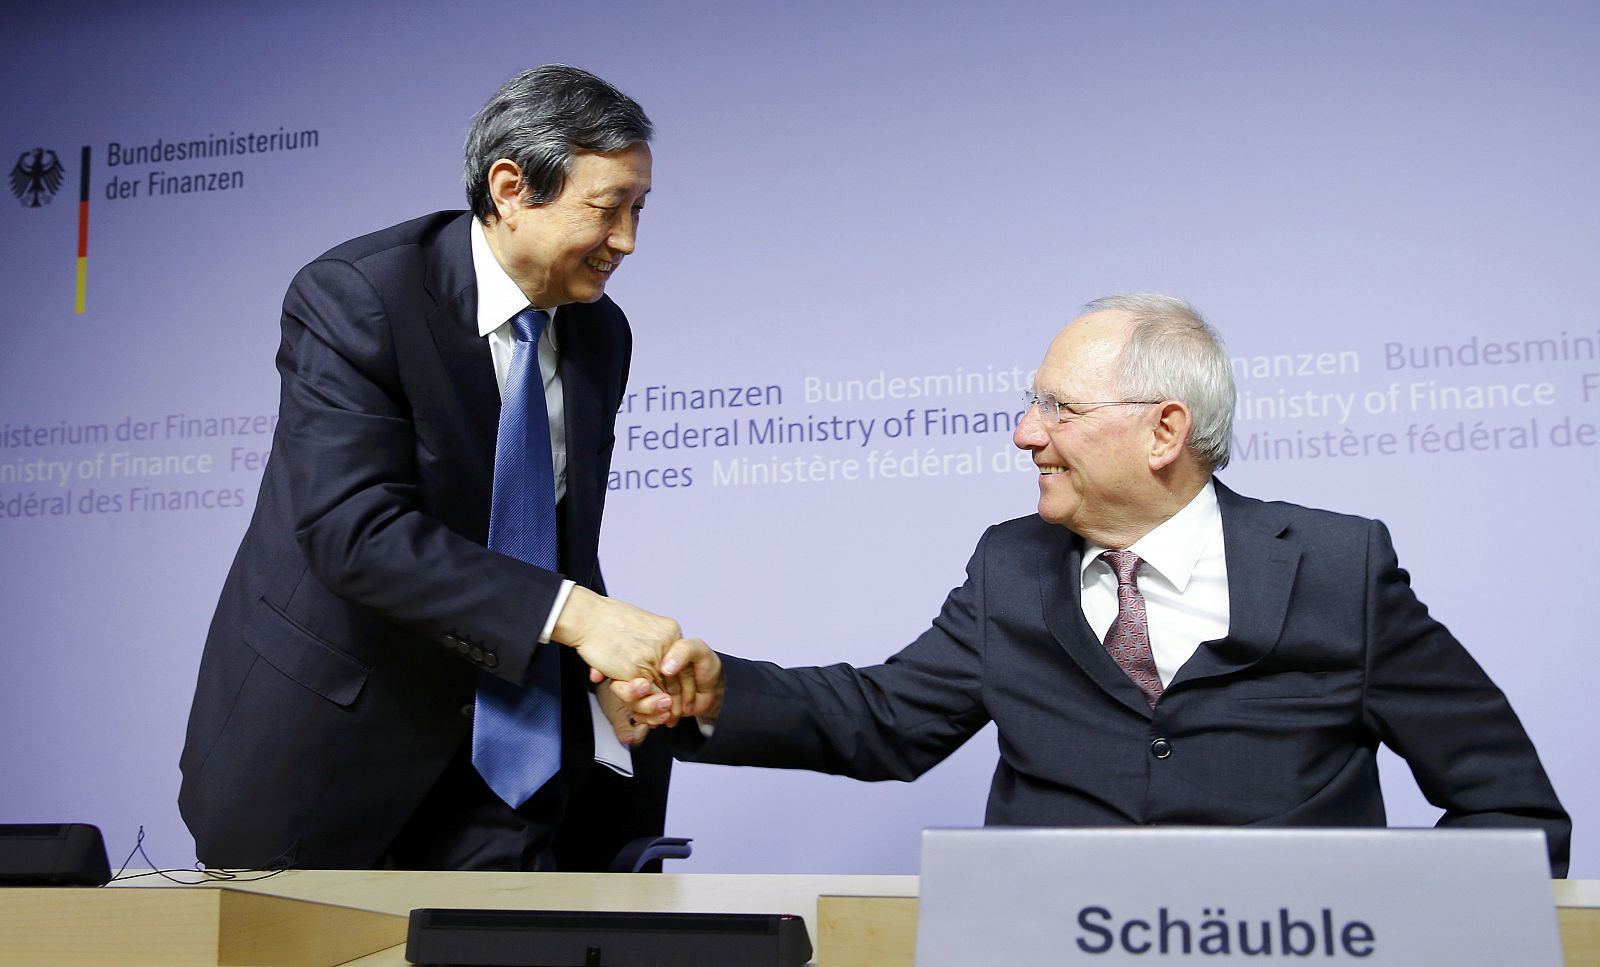 El ministro de Finanzas alemán saluda al viceprimer ministro chino en Berlín